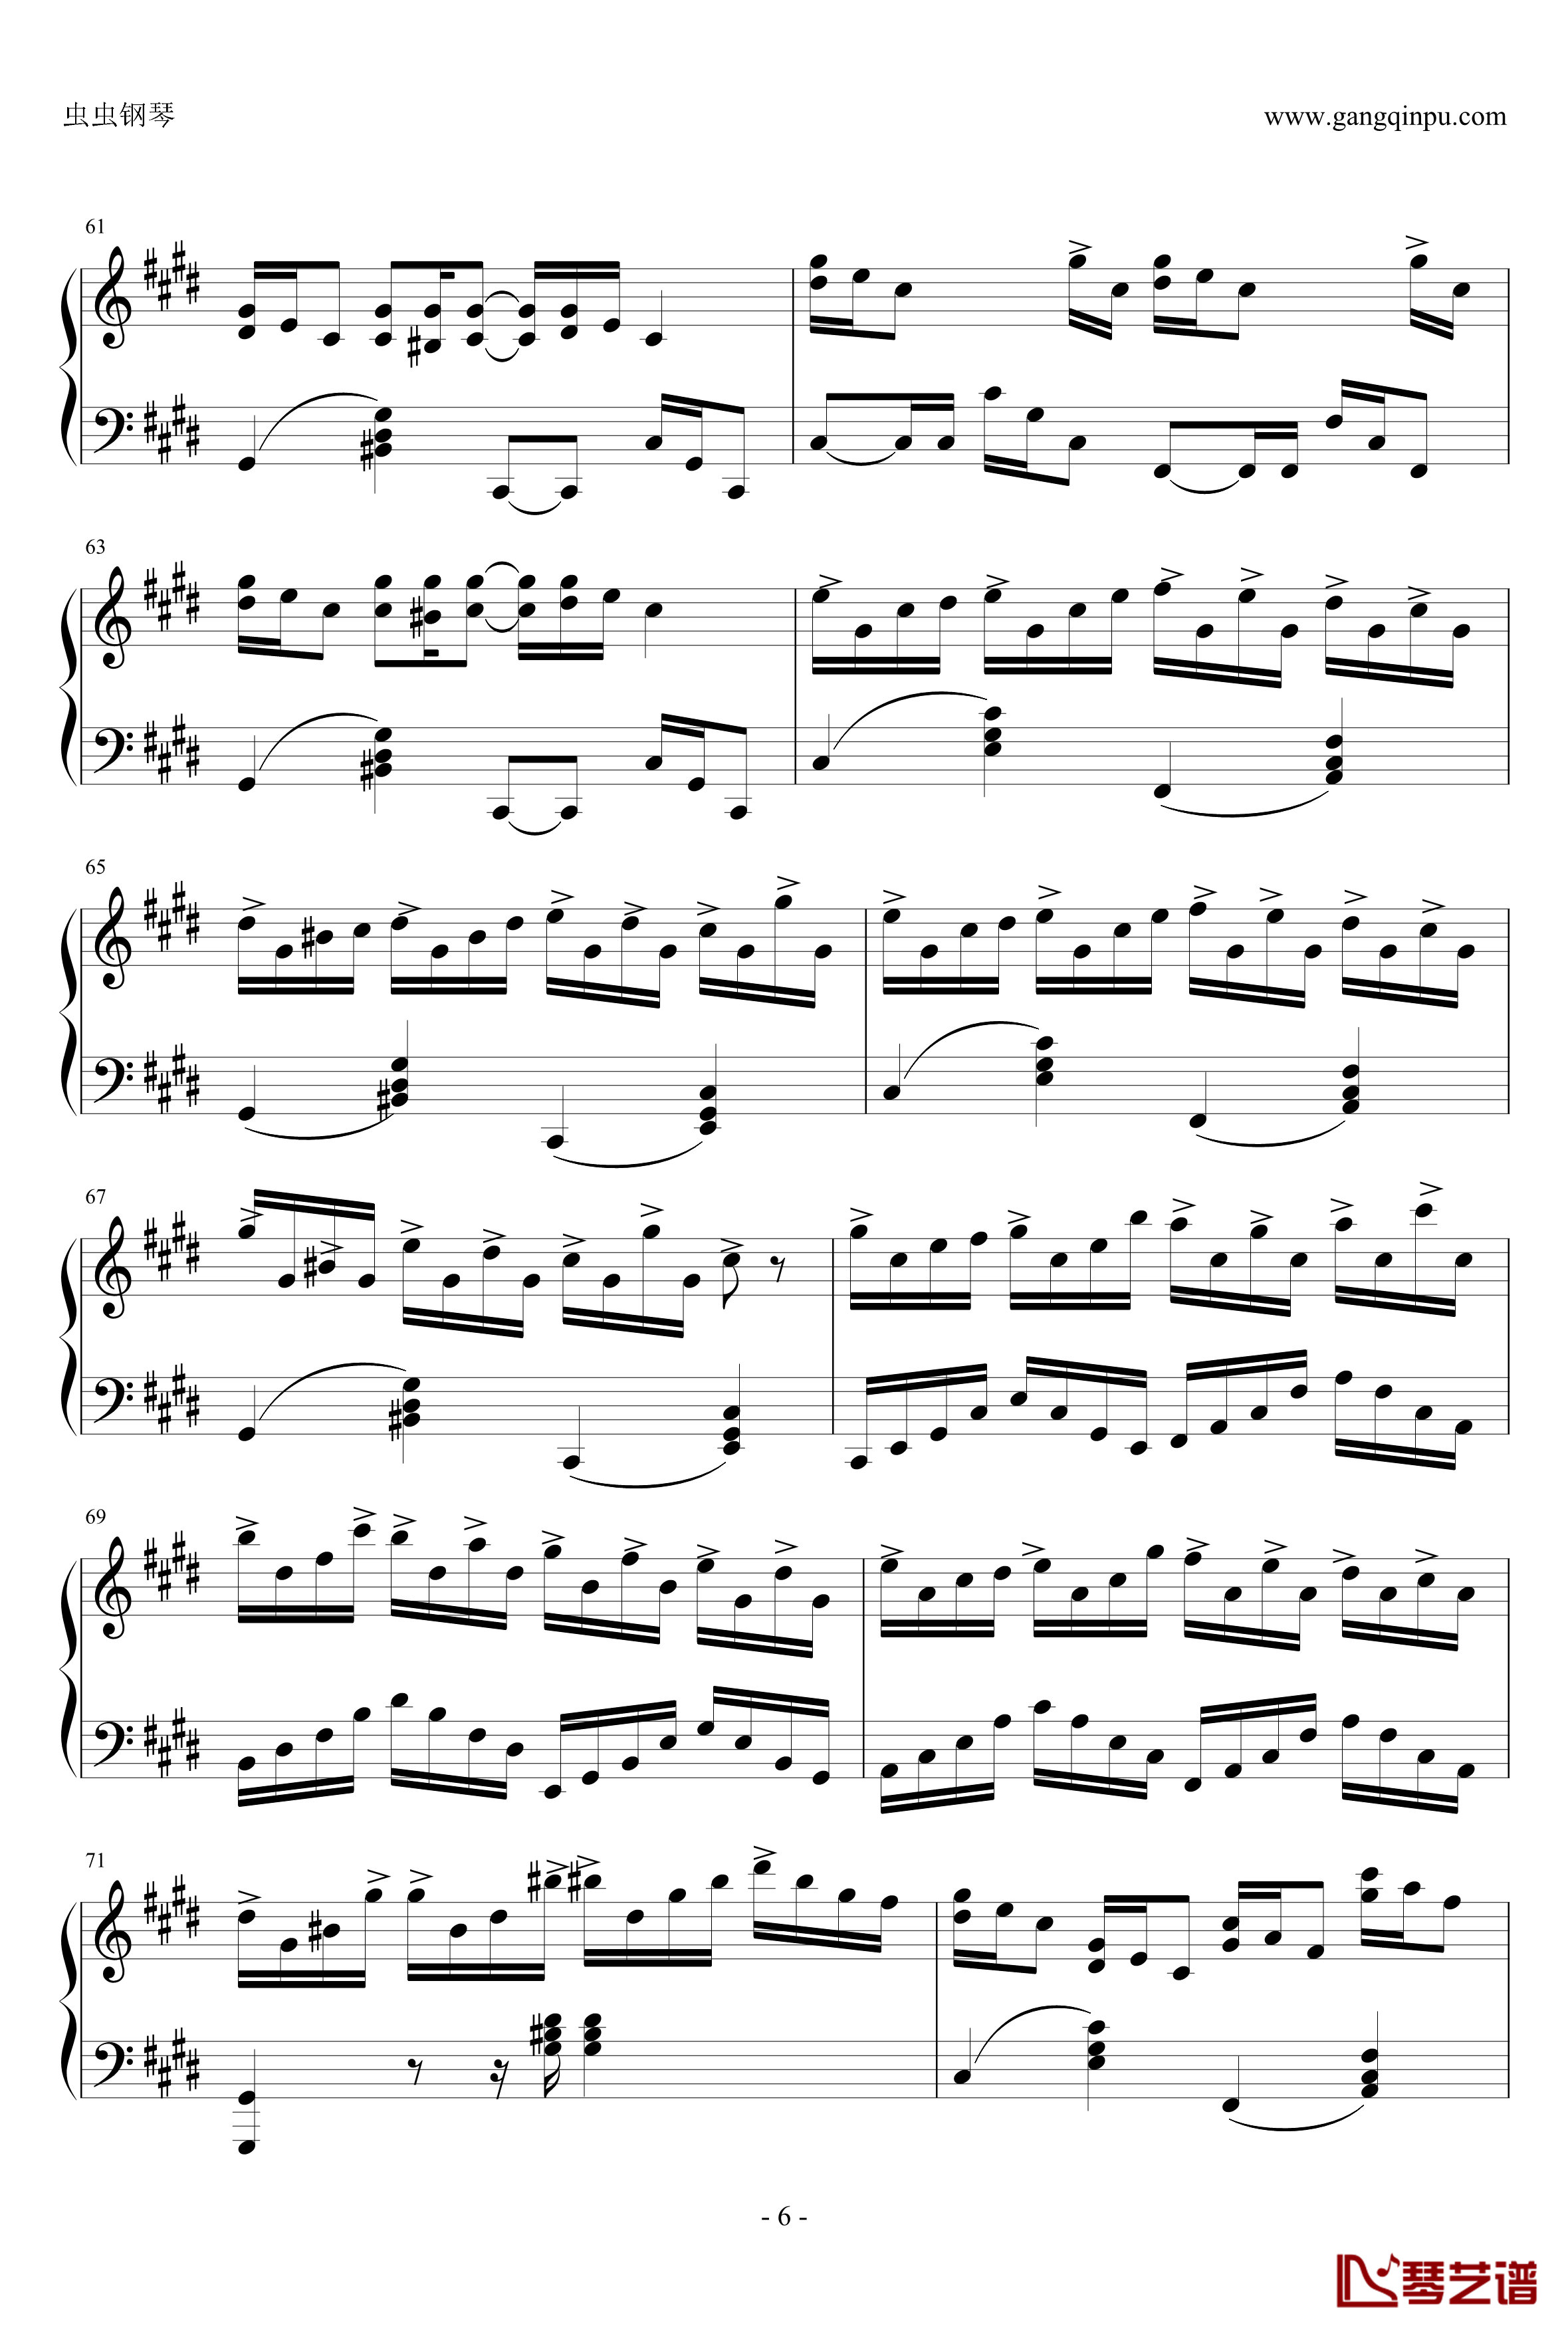 克罗地亚狂想曲钢琴谱-完美版-马克西姆-Maksim·Mrvica6